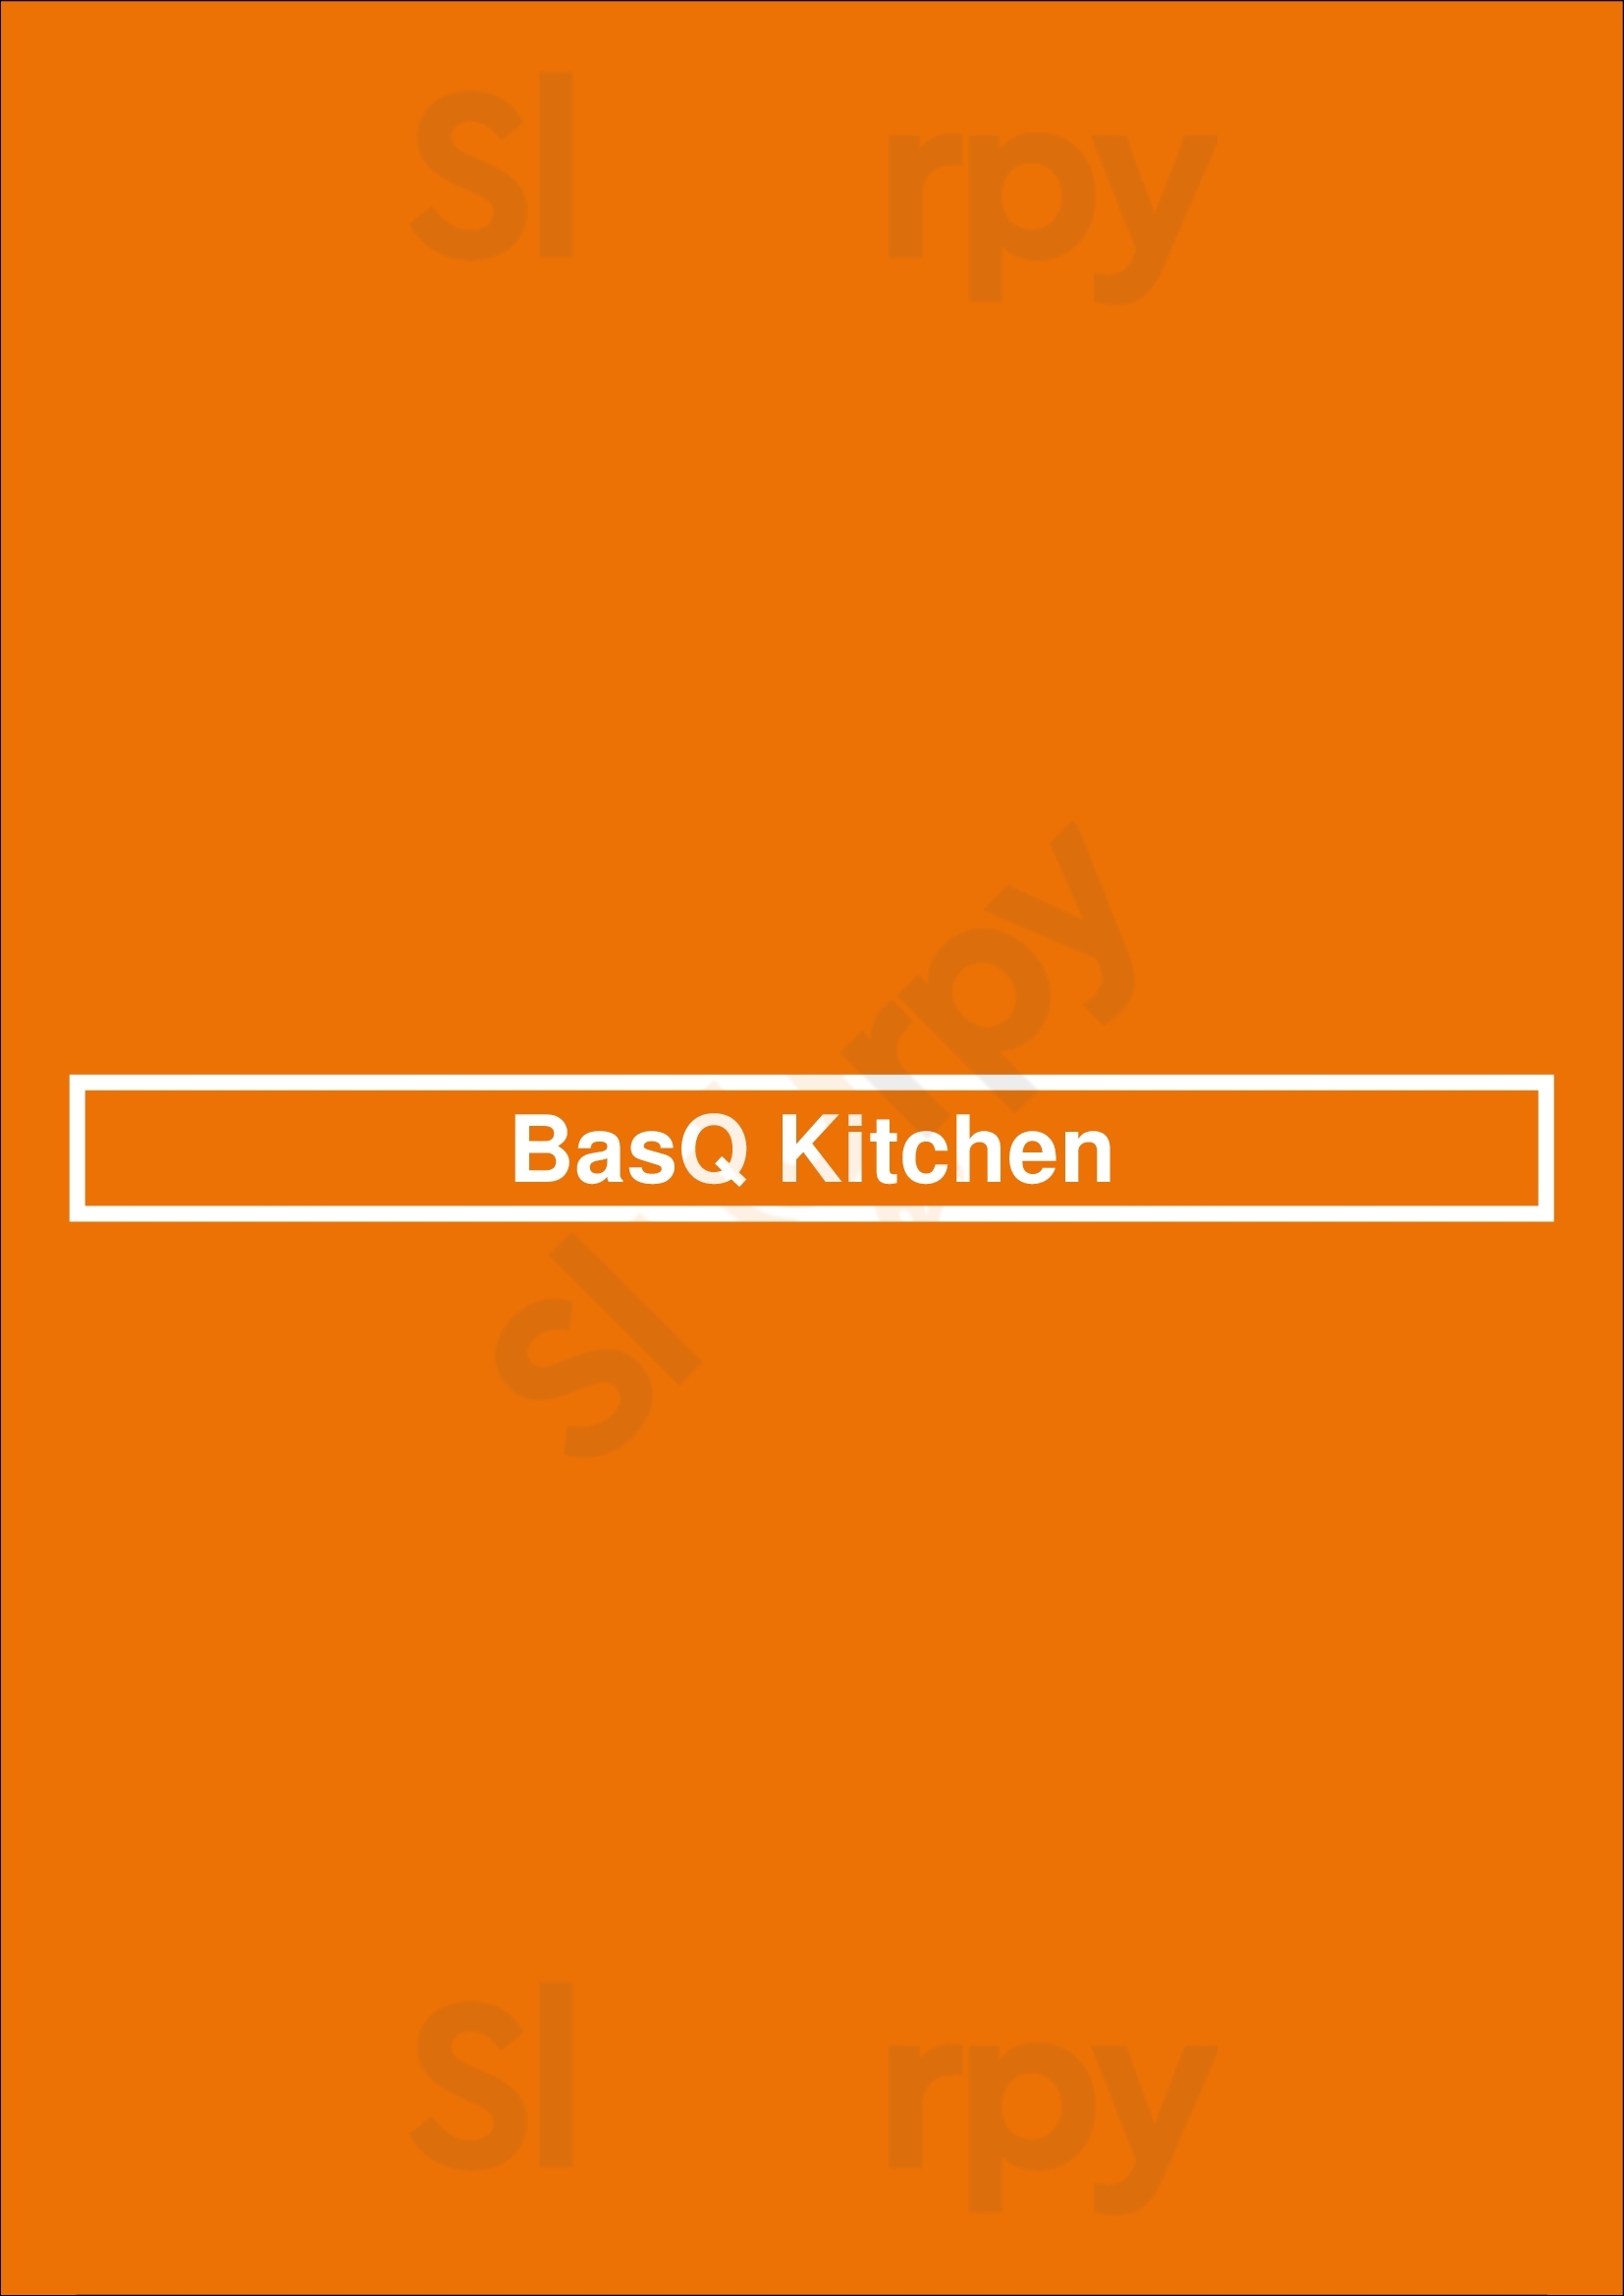 Basq Kitchen Rotterdam Menu - 1